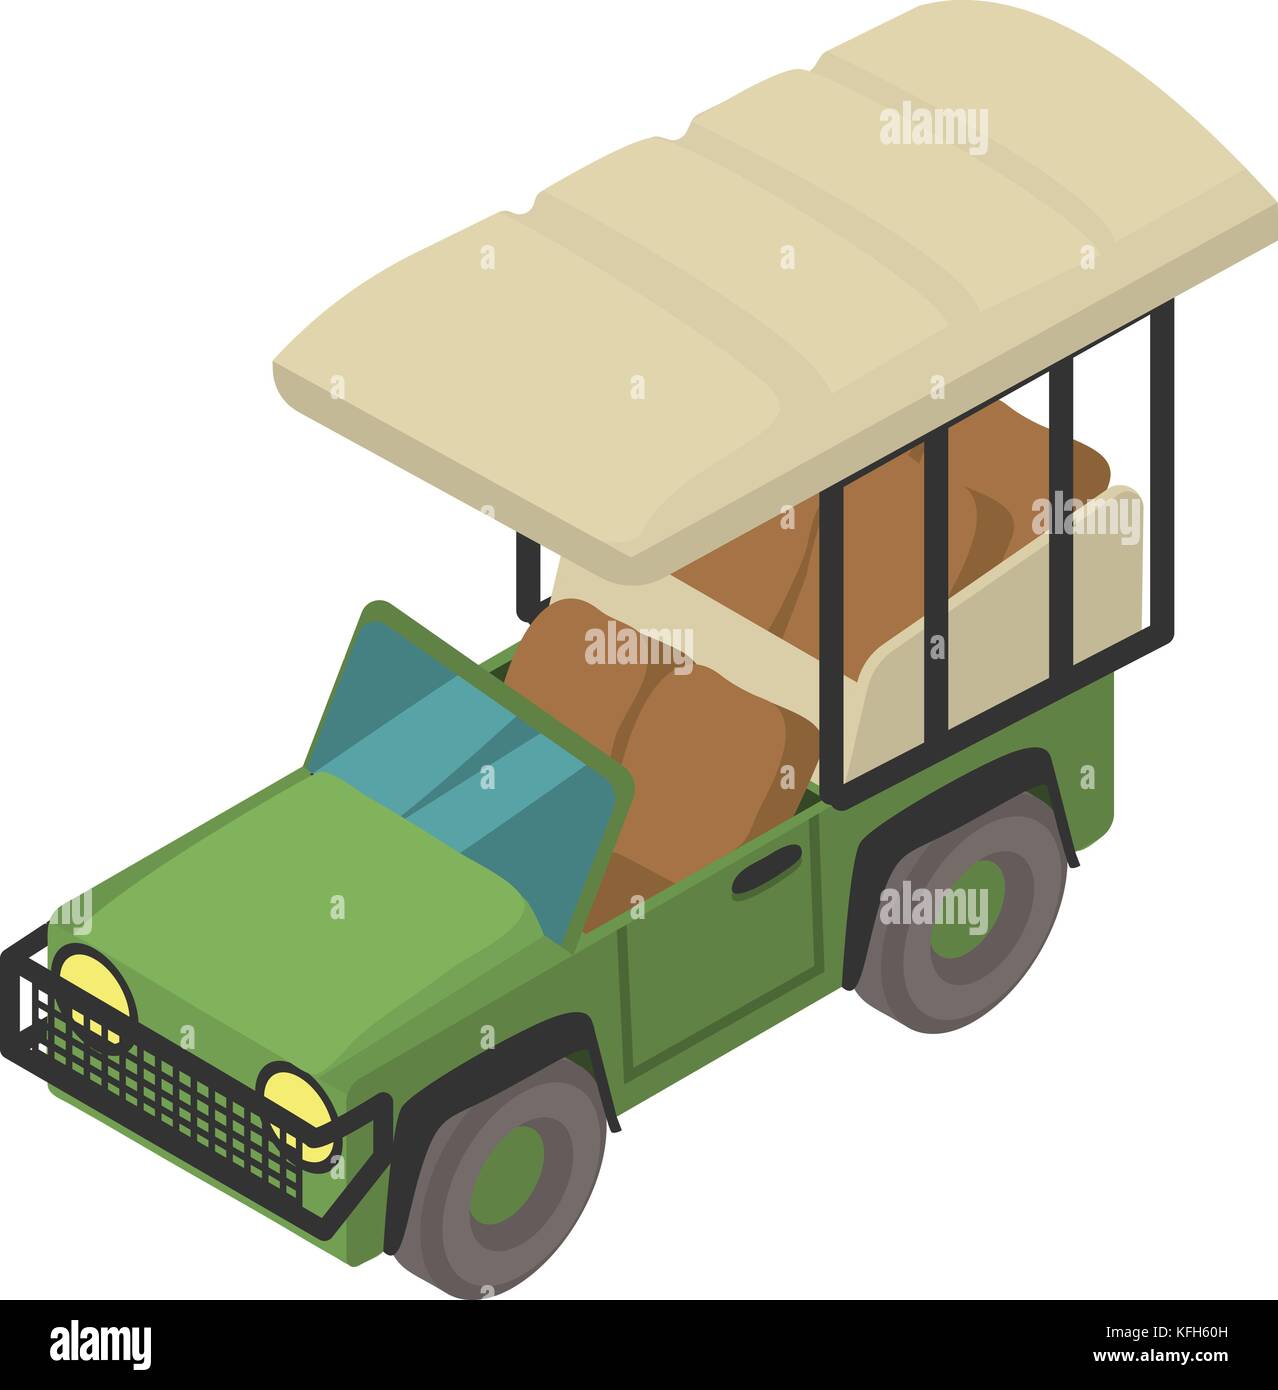 Icône de voiture safari, style isométrique Illustration de Vecteur